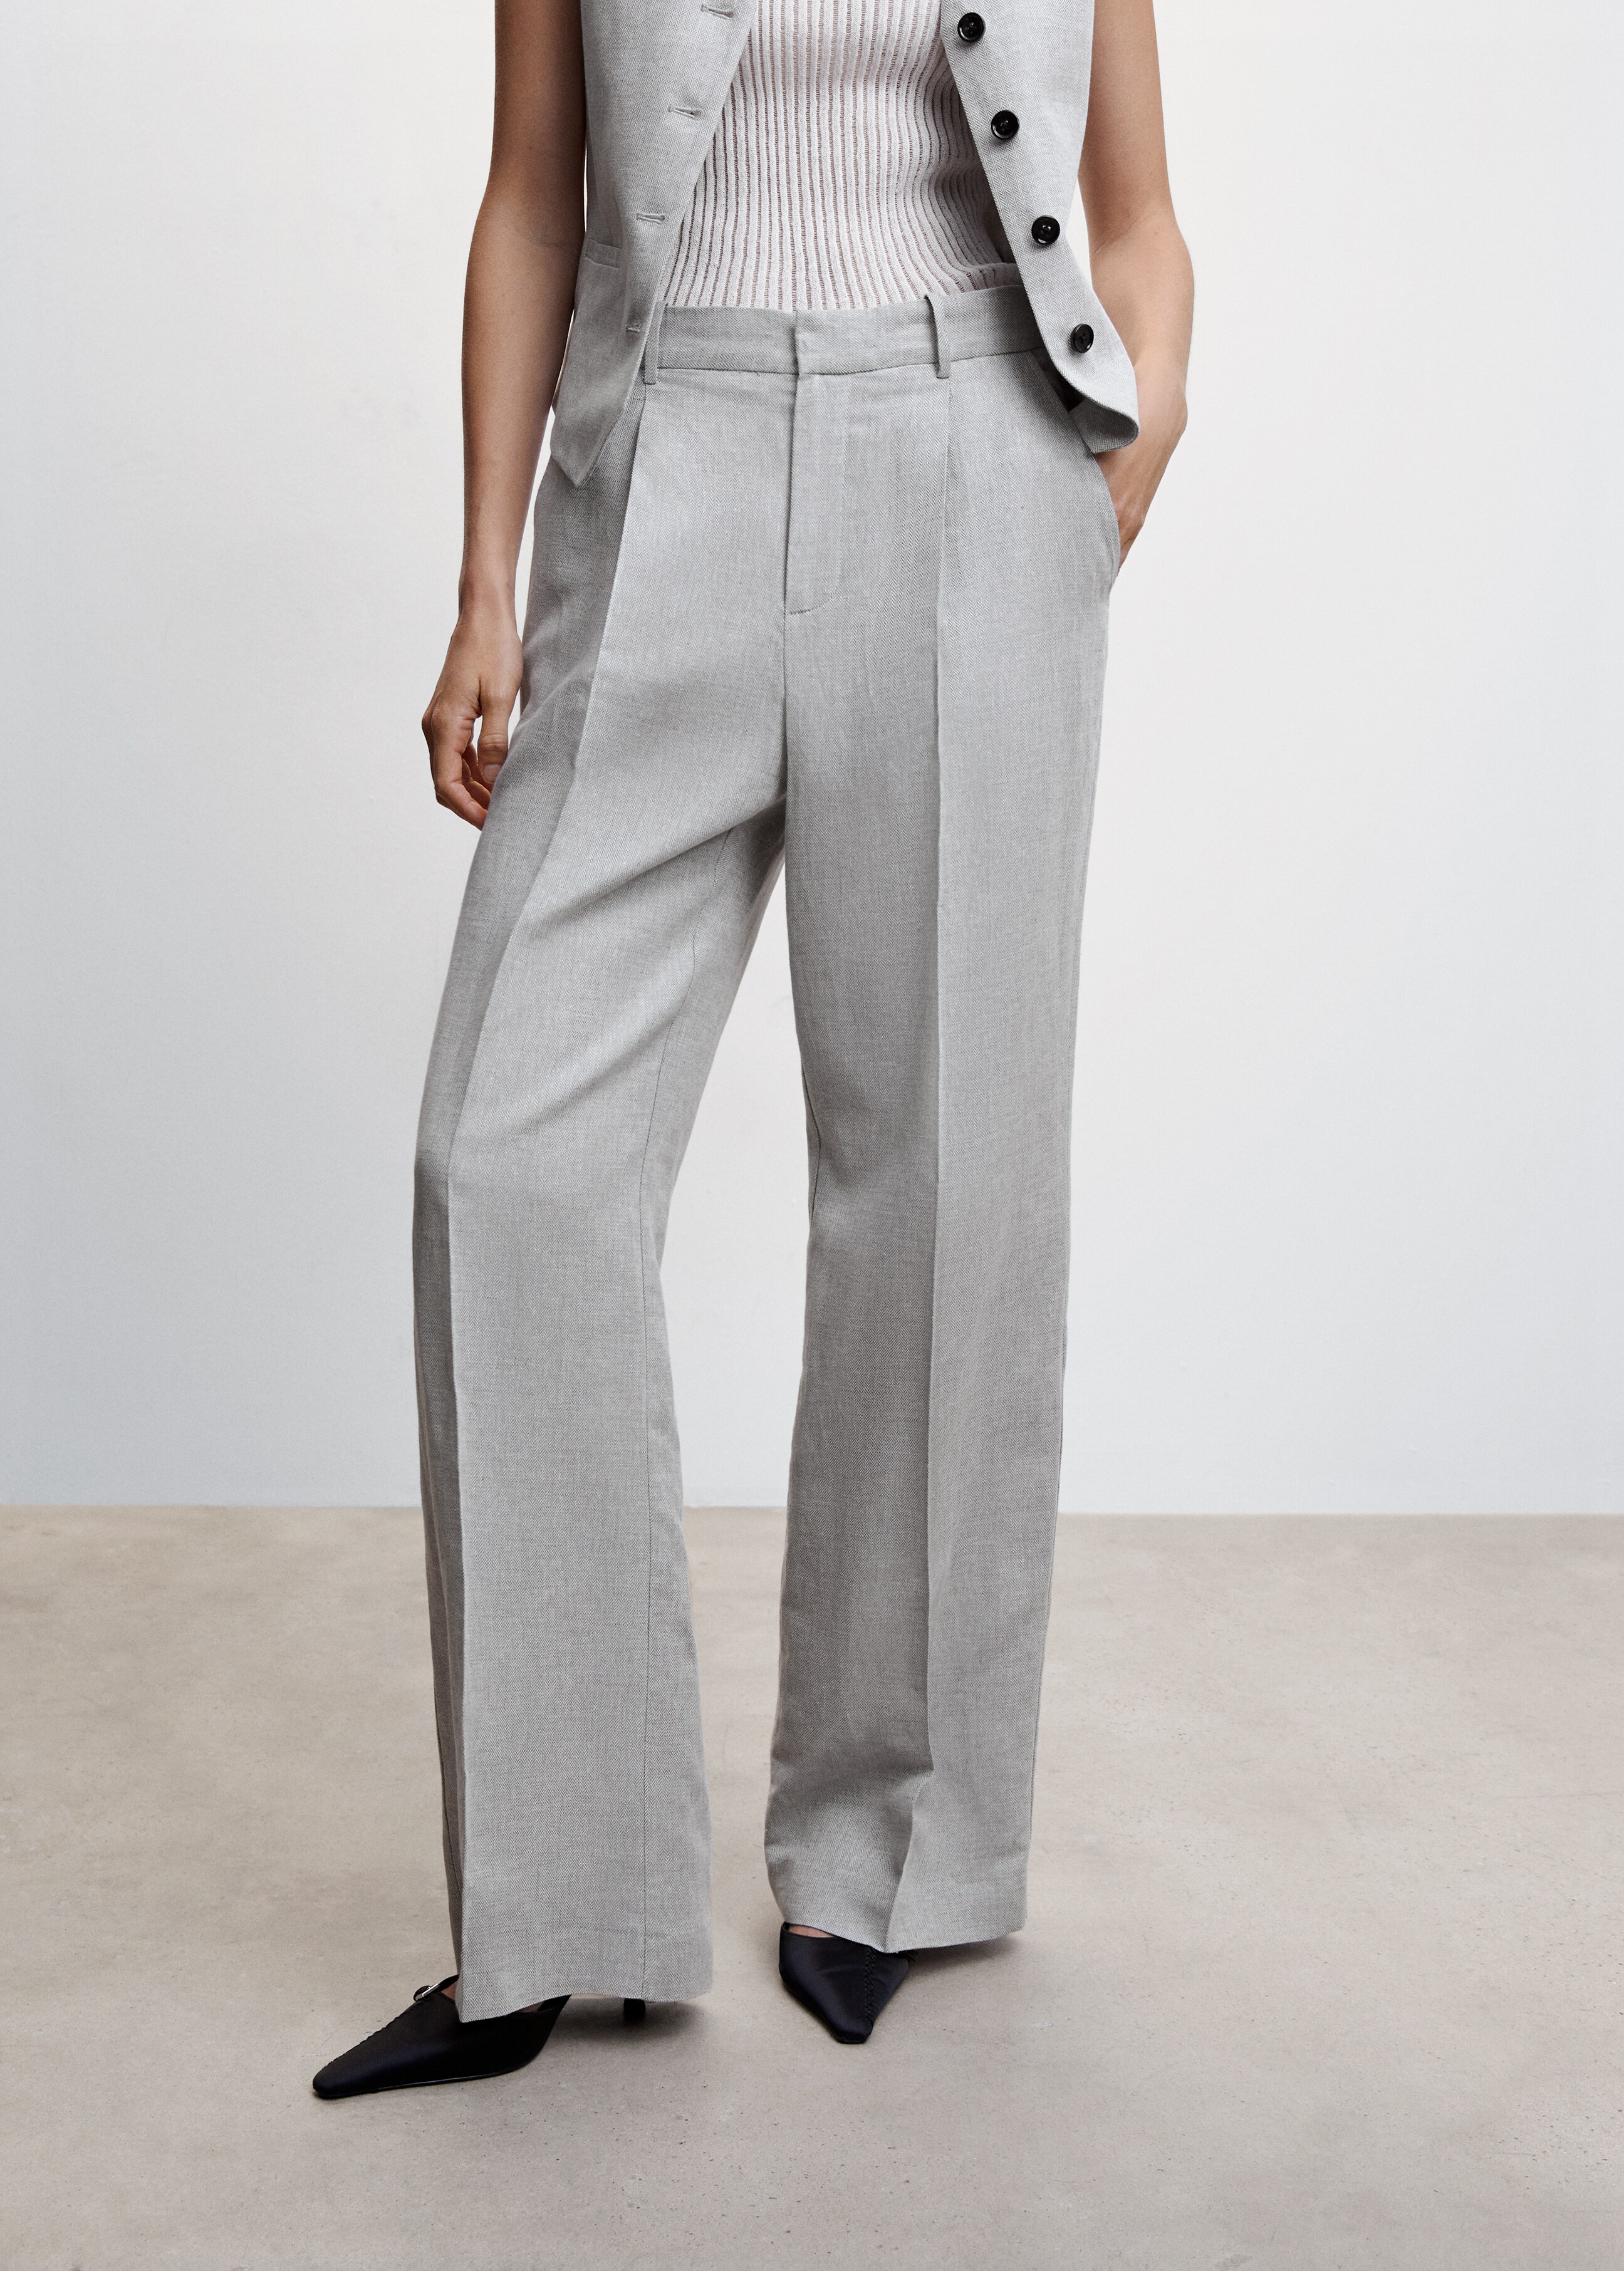 Herringbone linen suit trousers - Medium plane